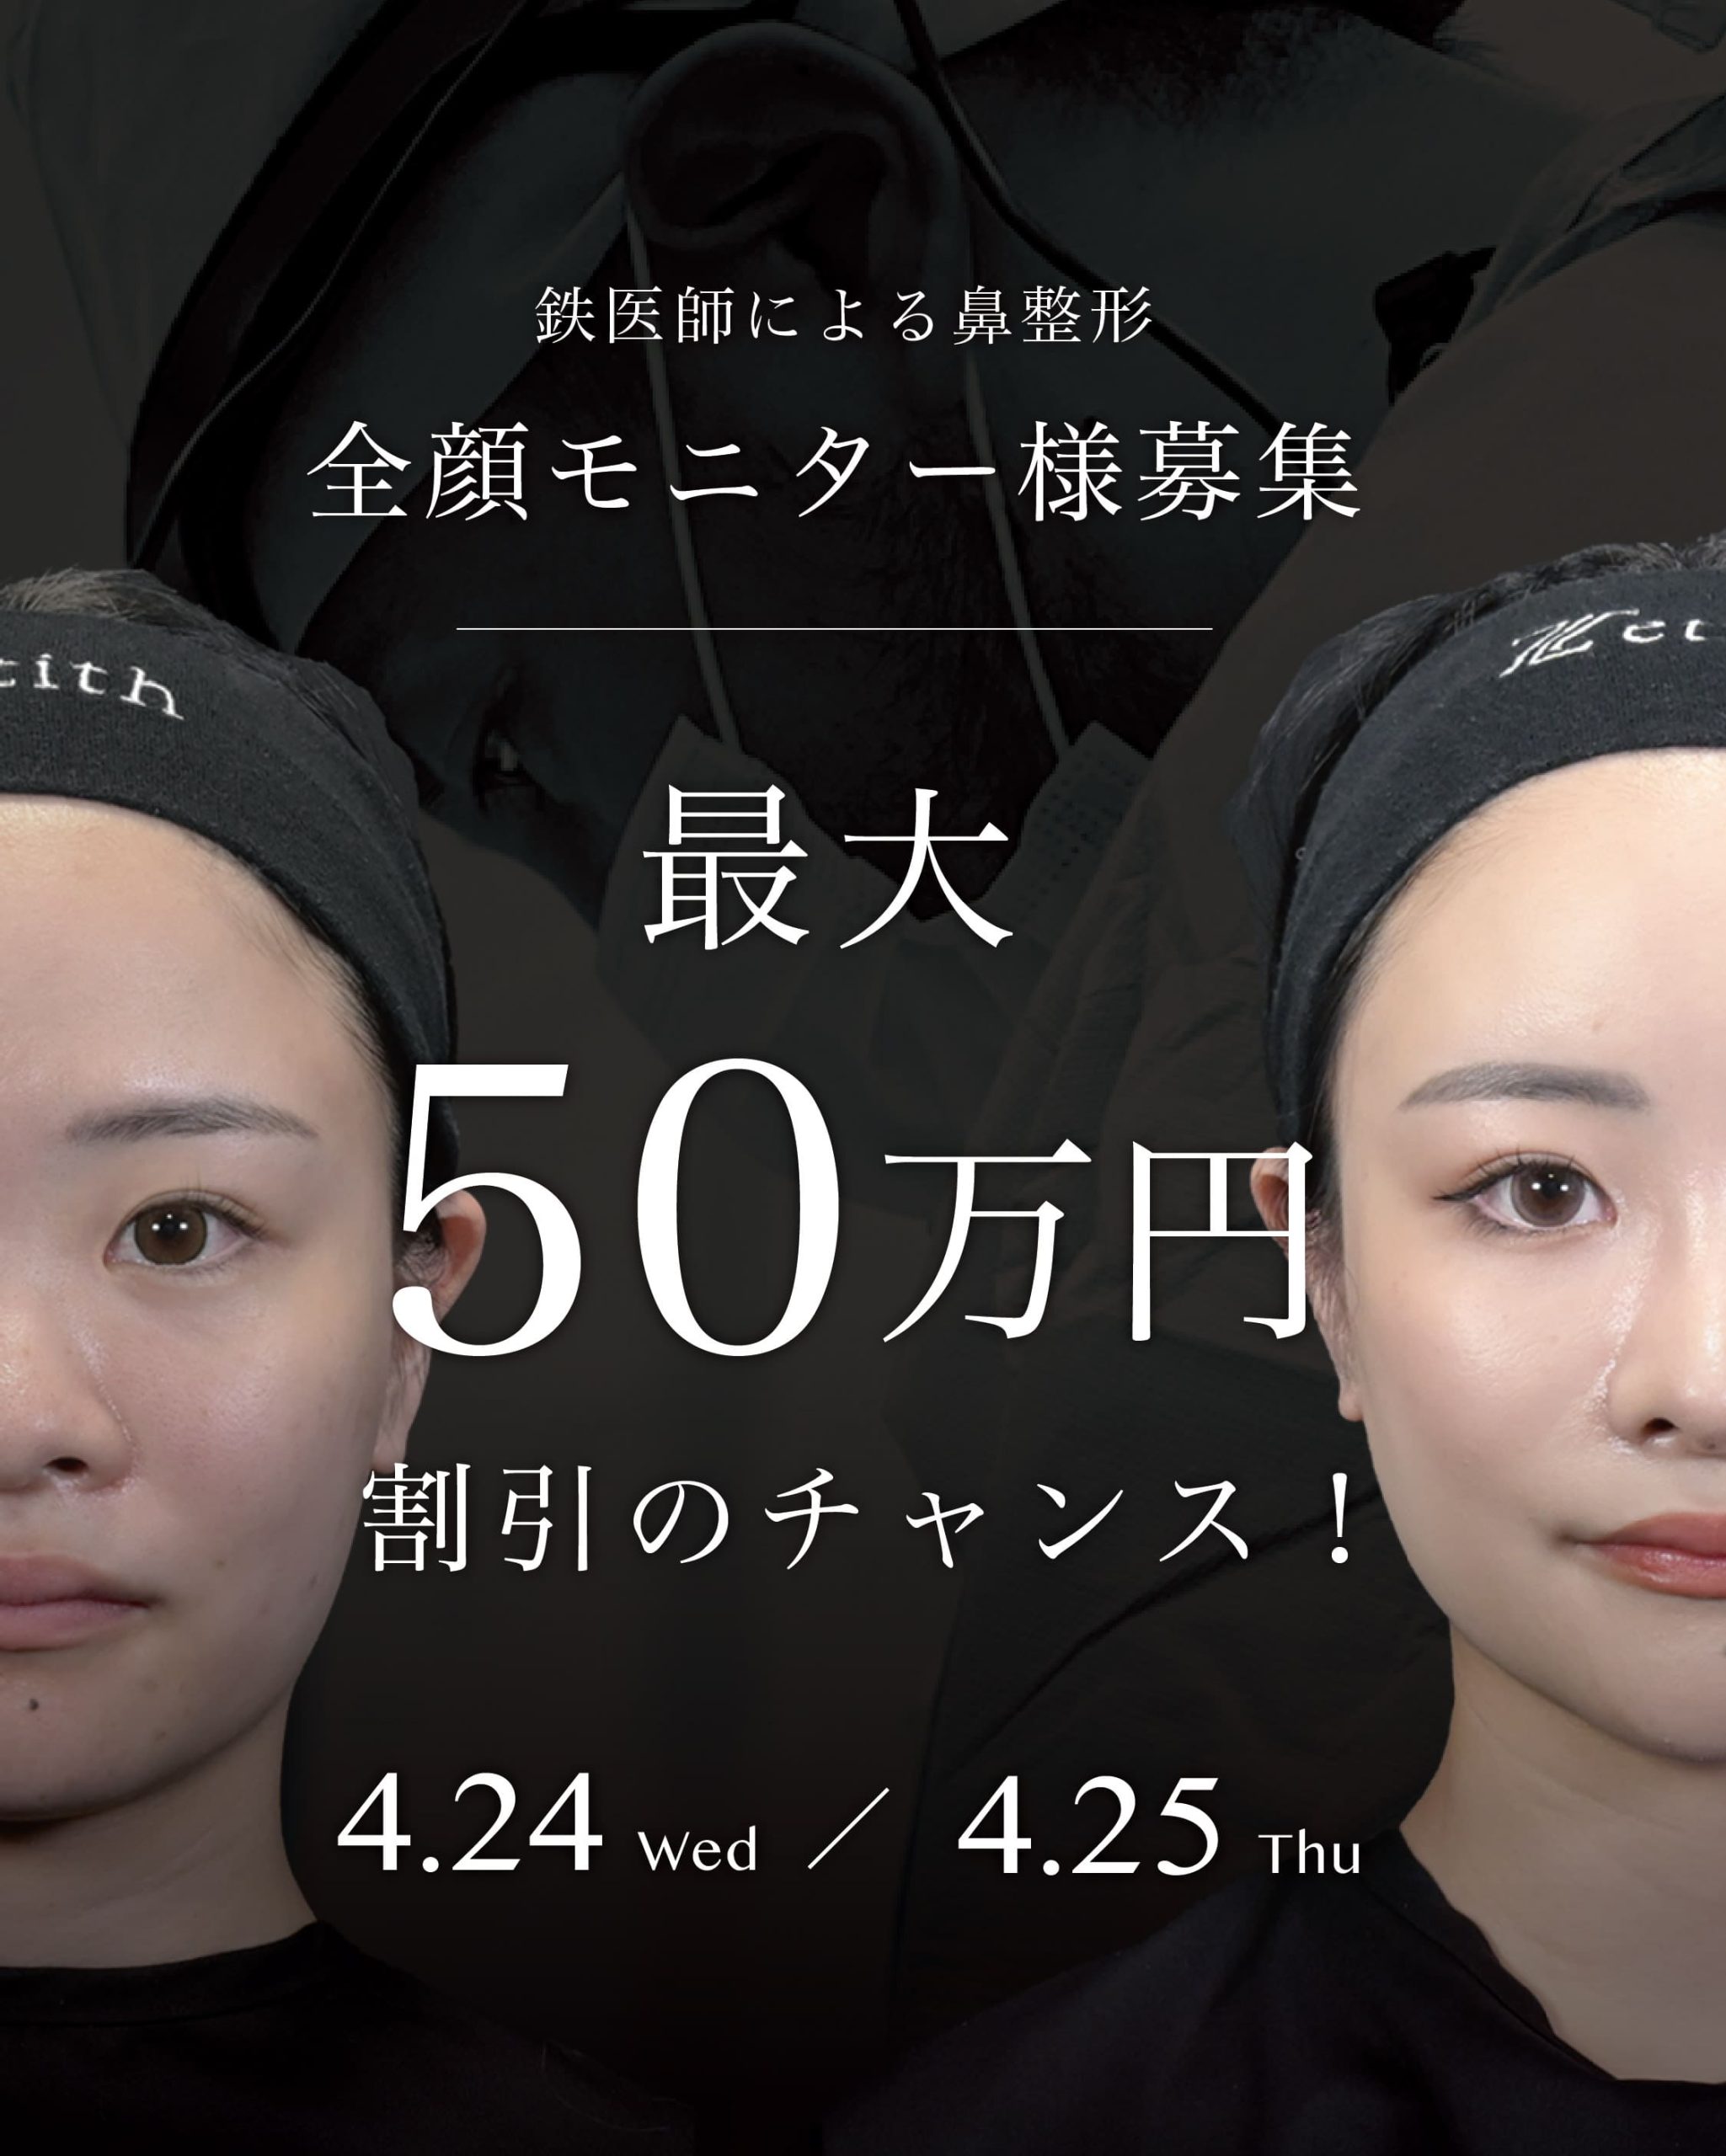 【4/24,25限定】鉄医師による鼻整形の全顔モニター募集&交通費補助